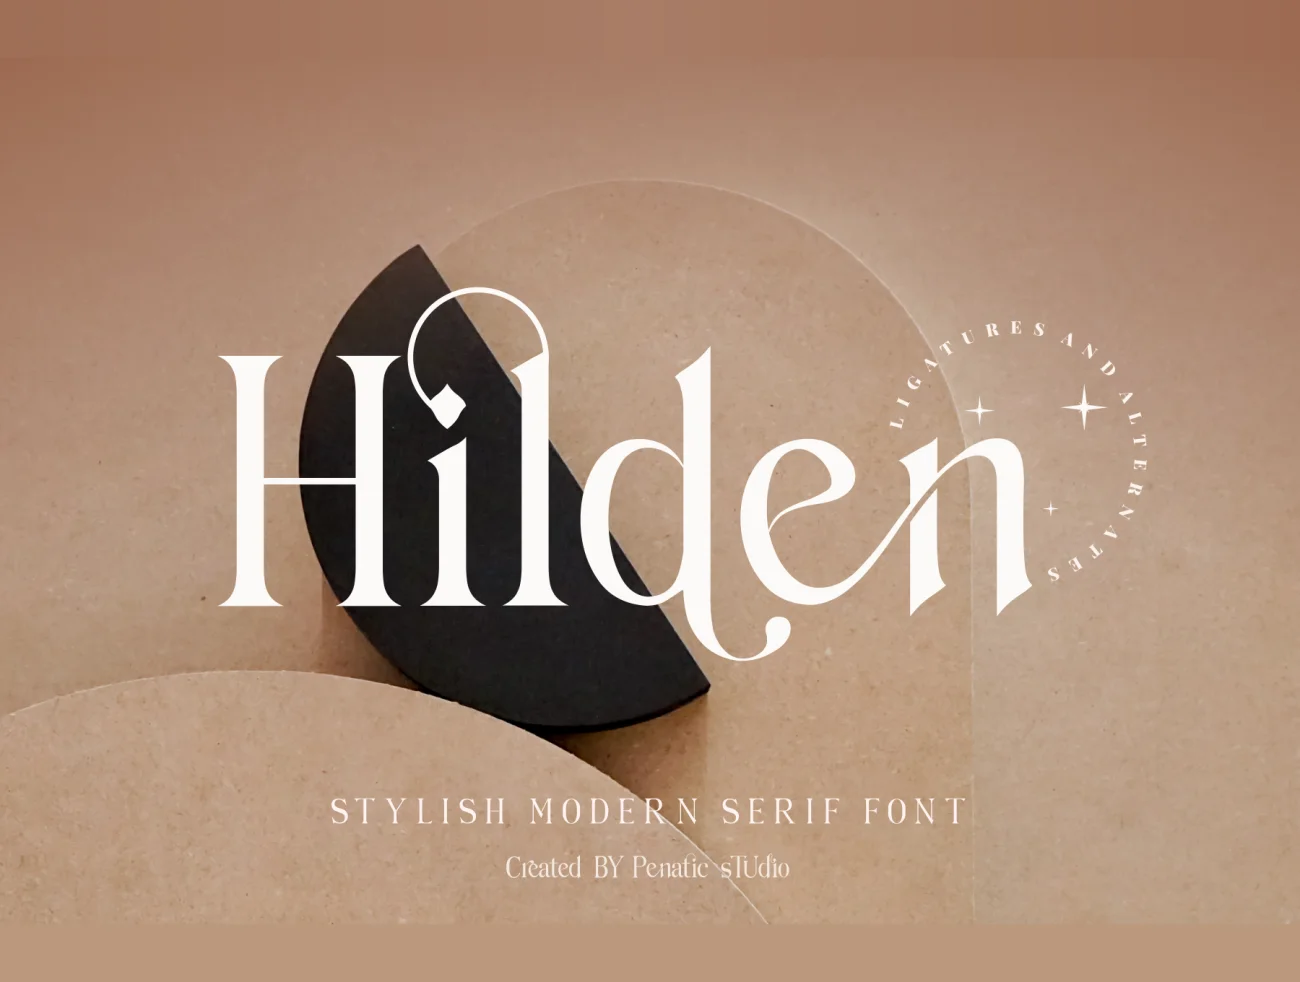 优雅时尚的现代衬线连体英文字体 Hilden – stylish modern serif font插图1